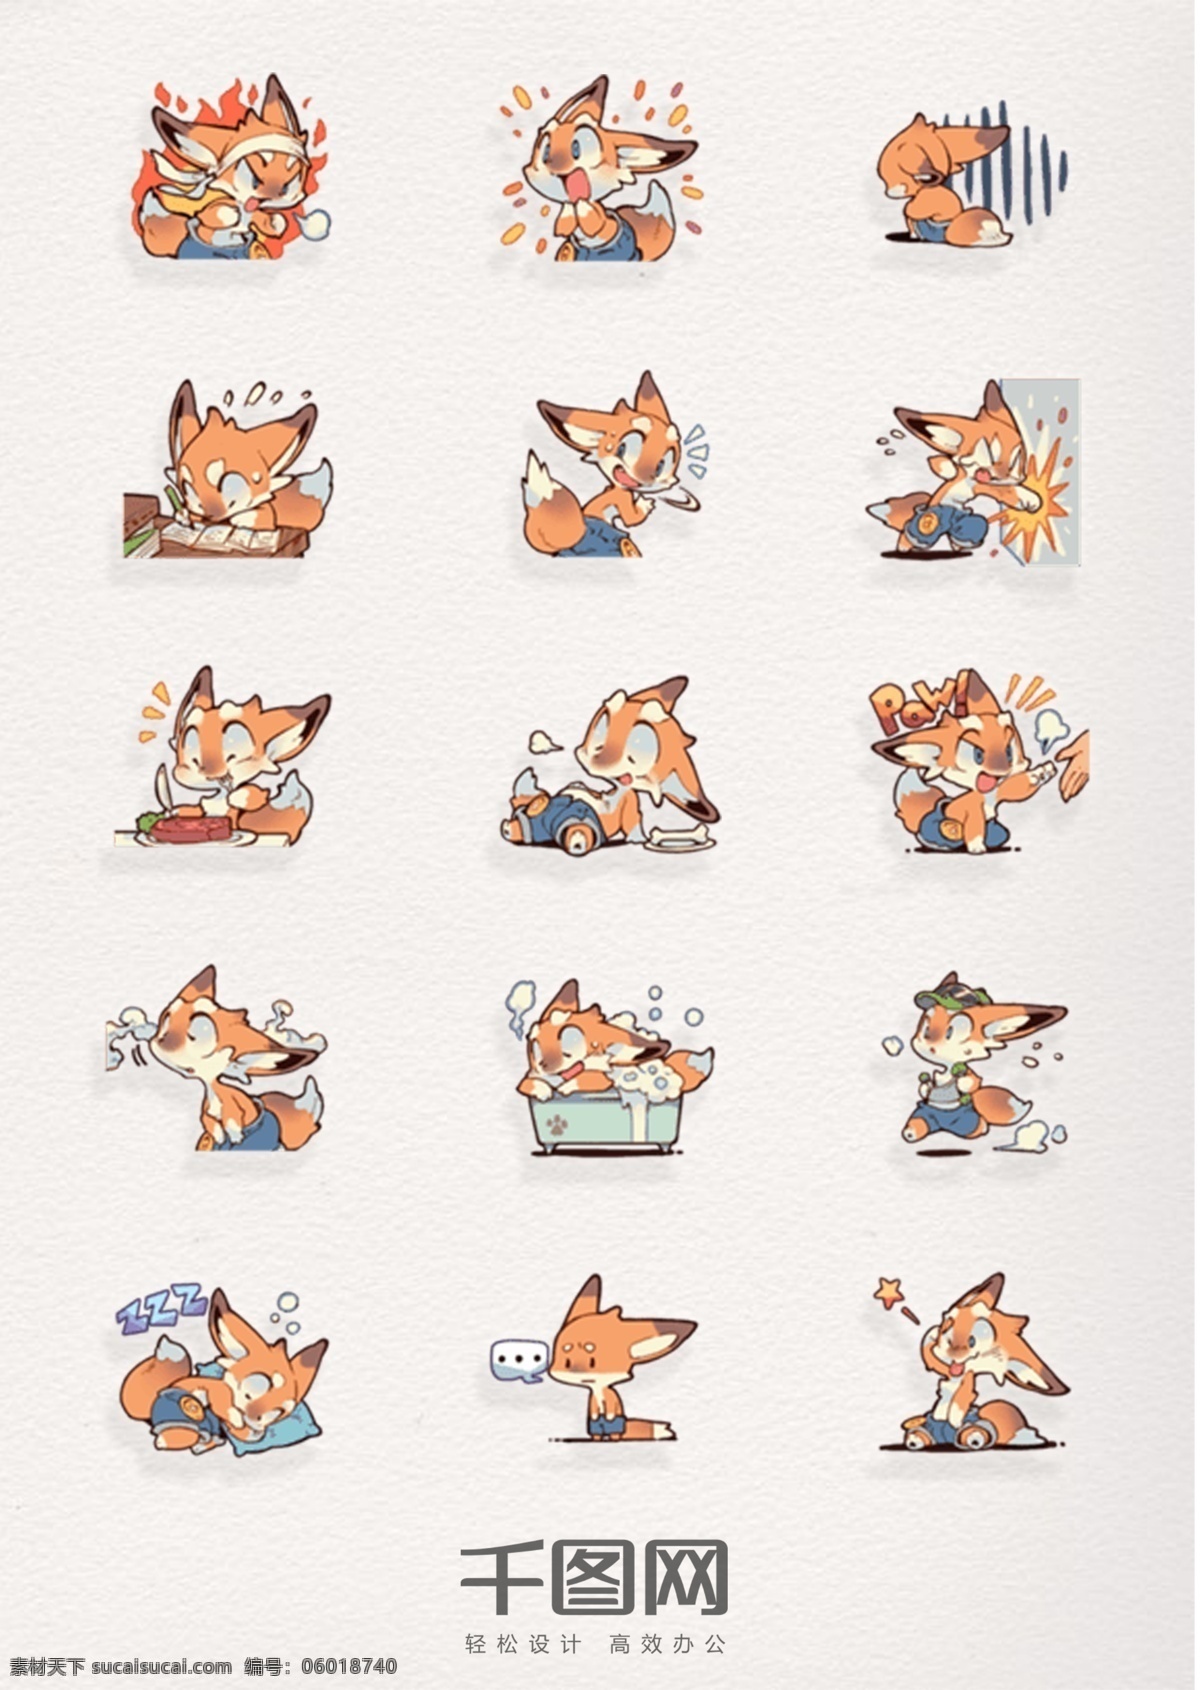 狐狸 卡通 表情 元素 图案 下 狐狸元素 狐狸卡通图案 狐狸图案 狐狸装饰图案 狐狸表情 狐狸卡通表情 卡通狐狸